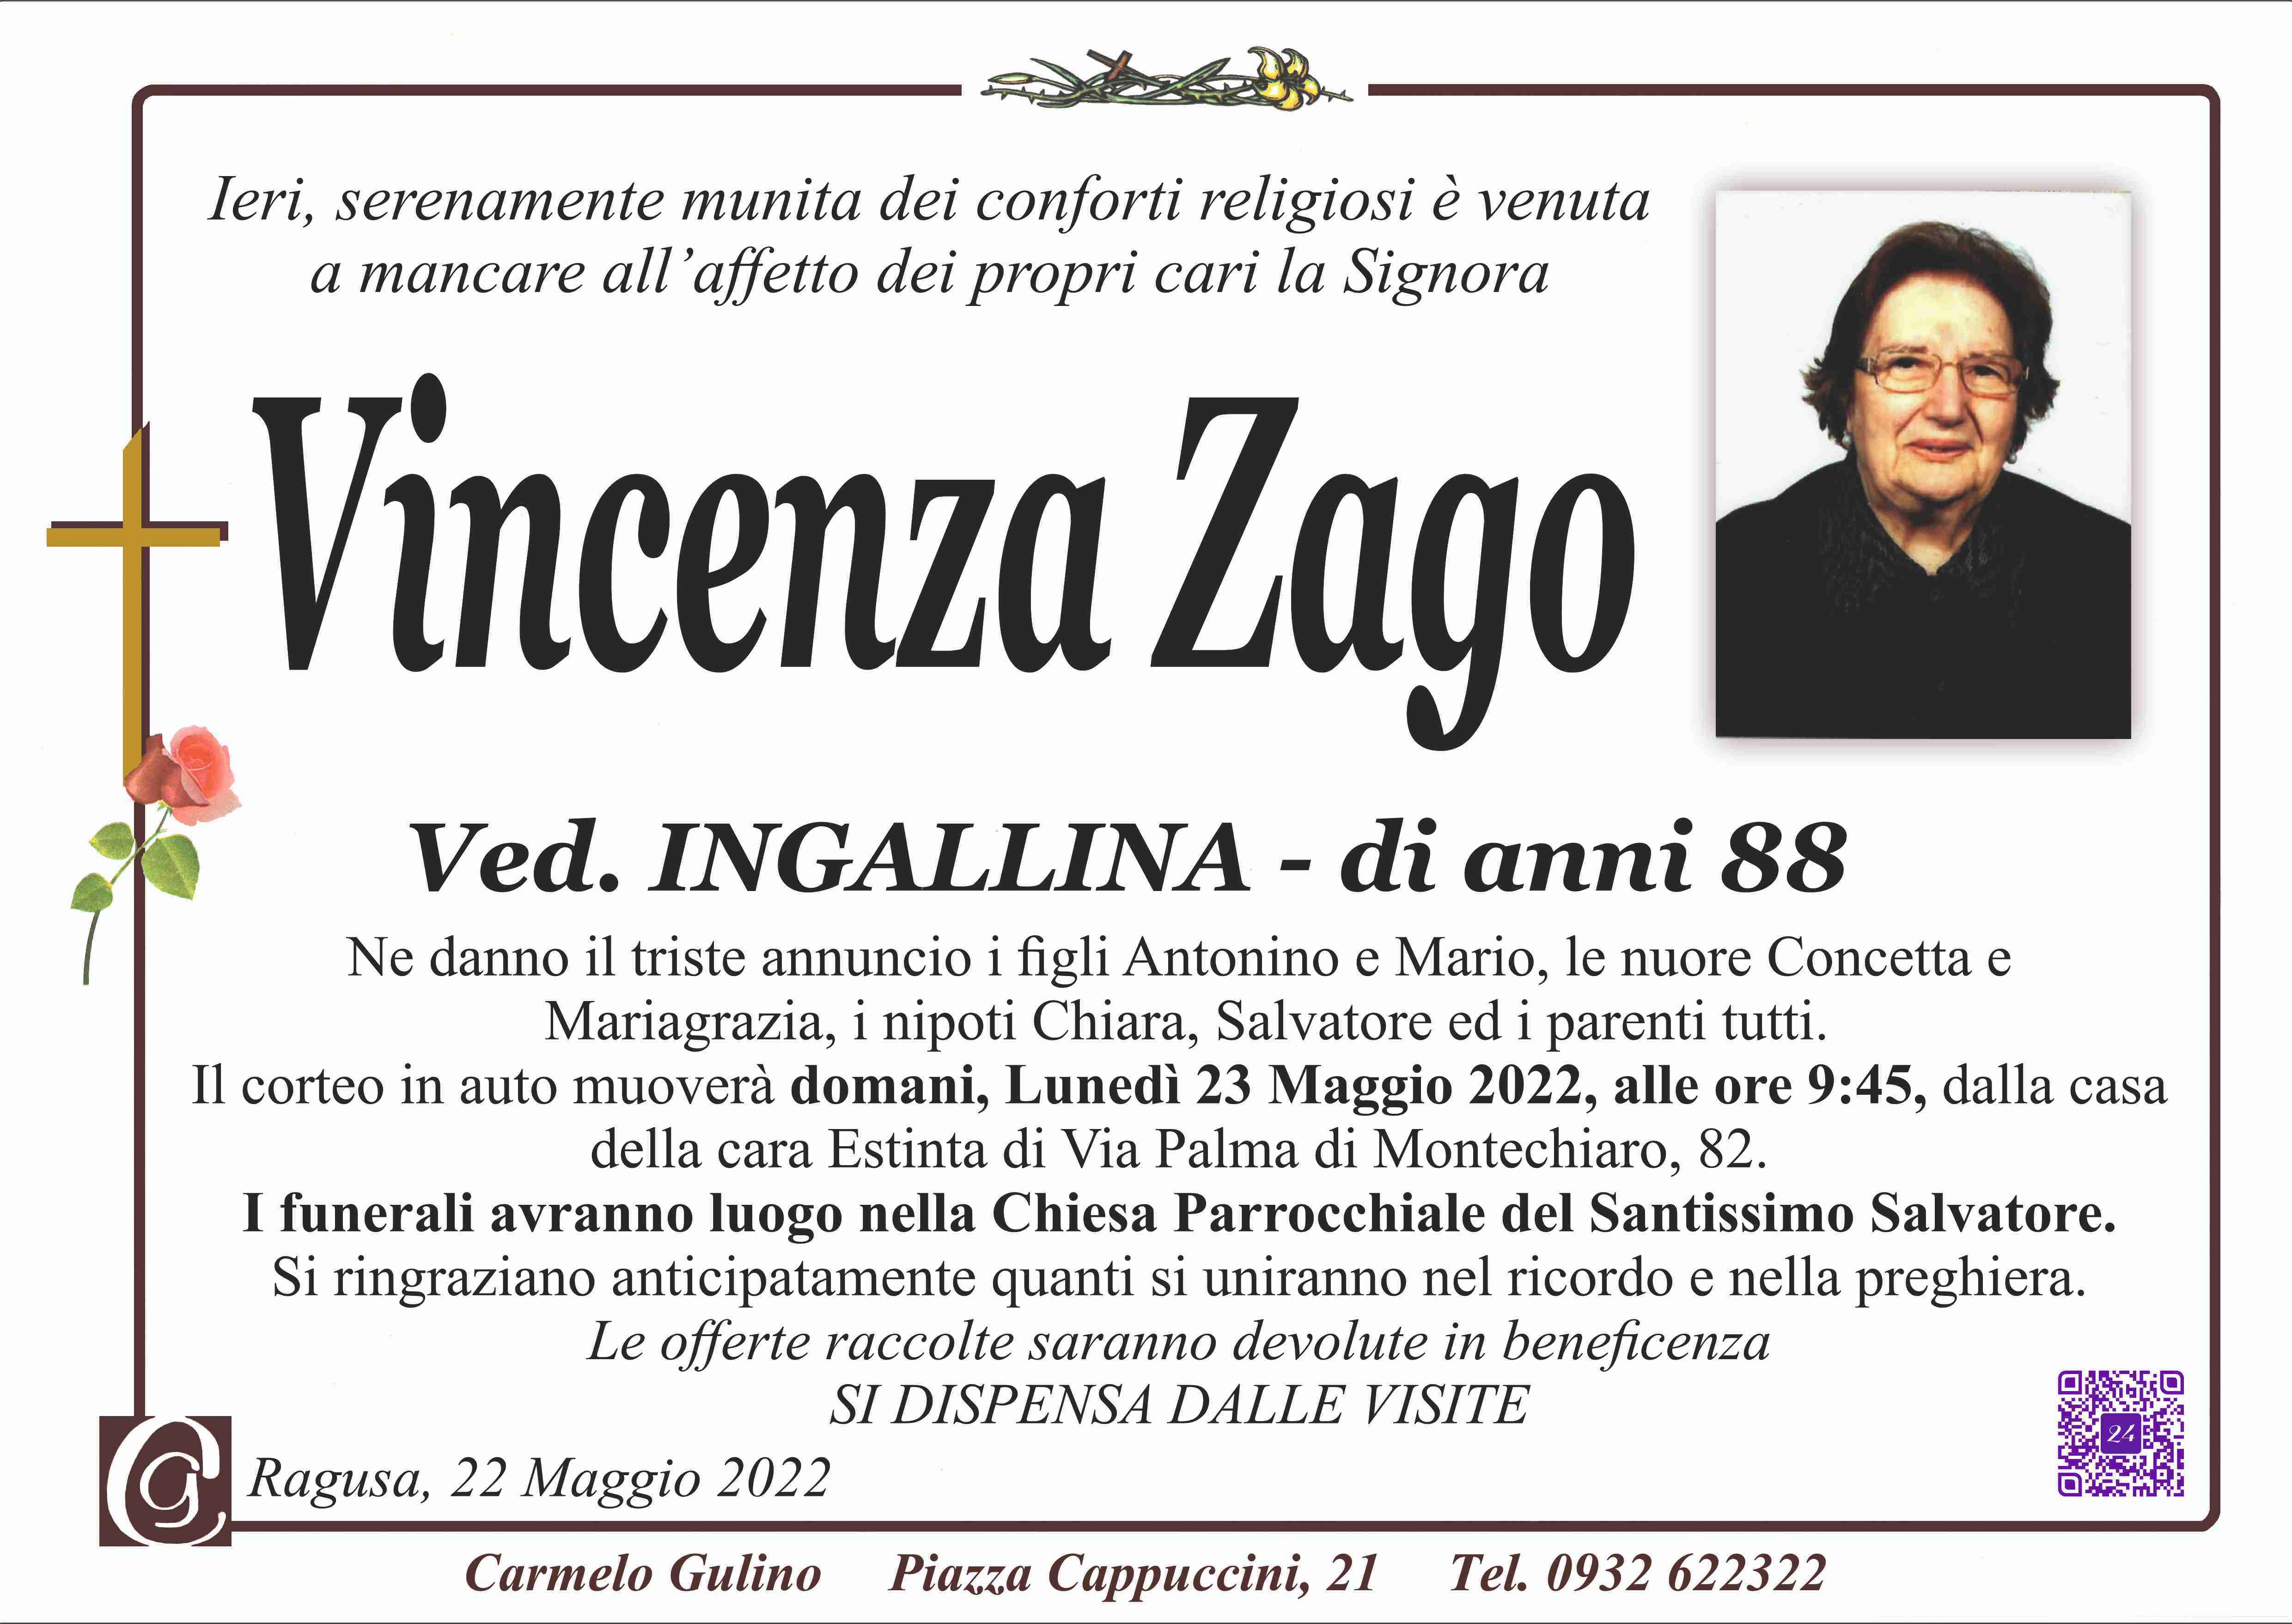 Vincenza Zago